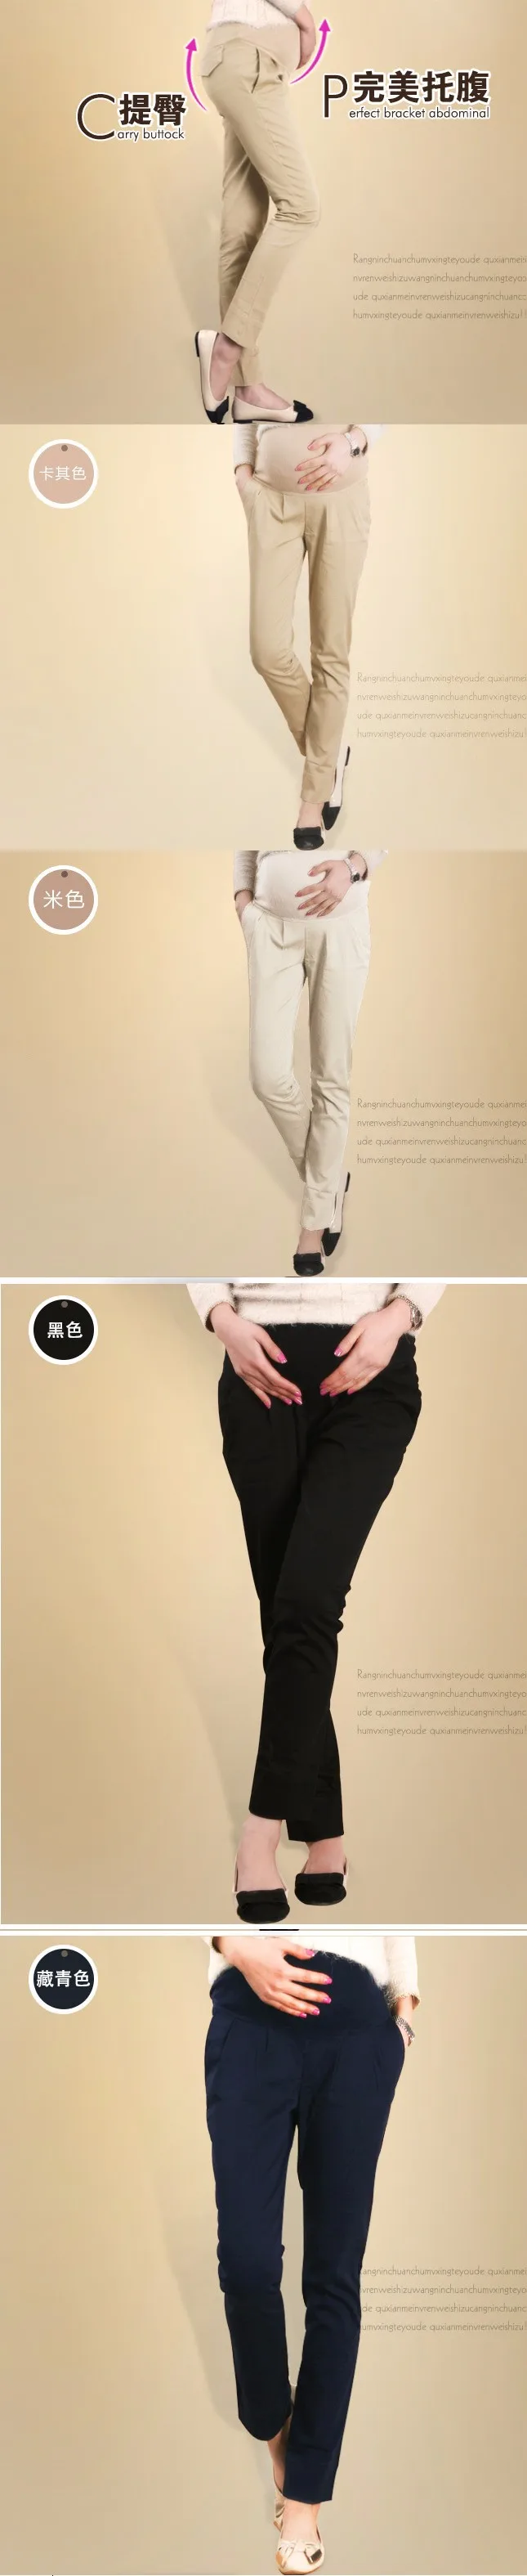 Okaymom брюки для грудного вскармливания повседневные штаны для беременности Одежда Плюс Размер Весна Осень длинные брюки для беременных женщин